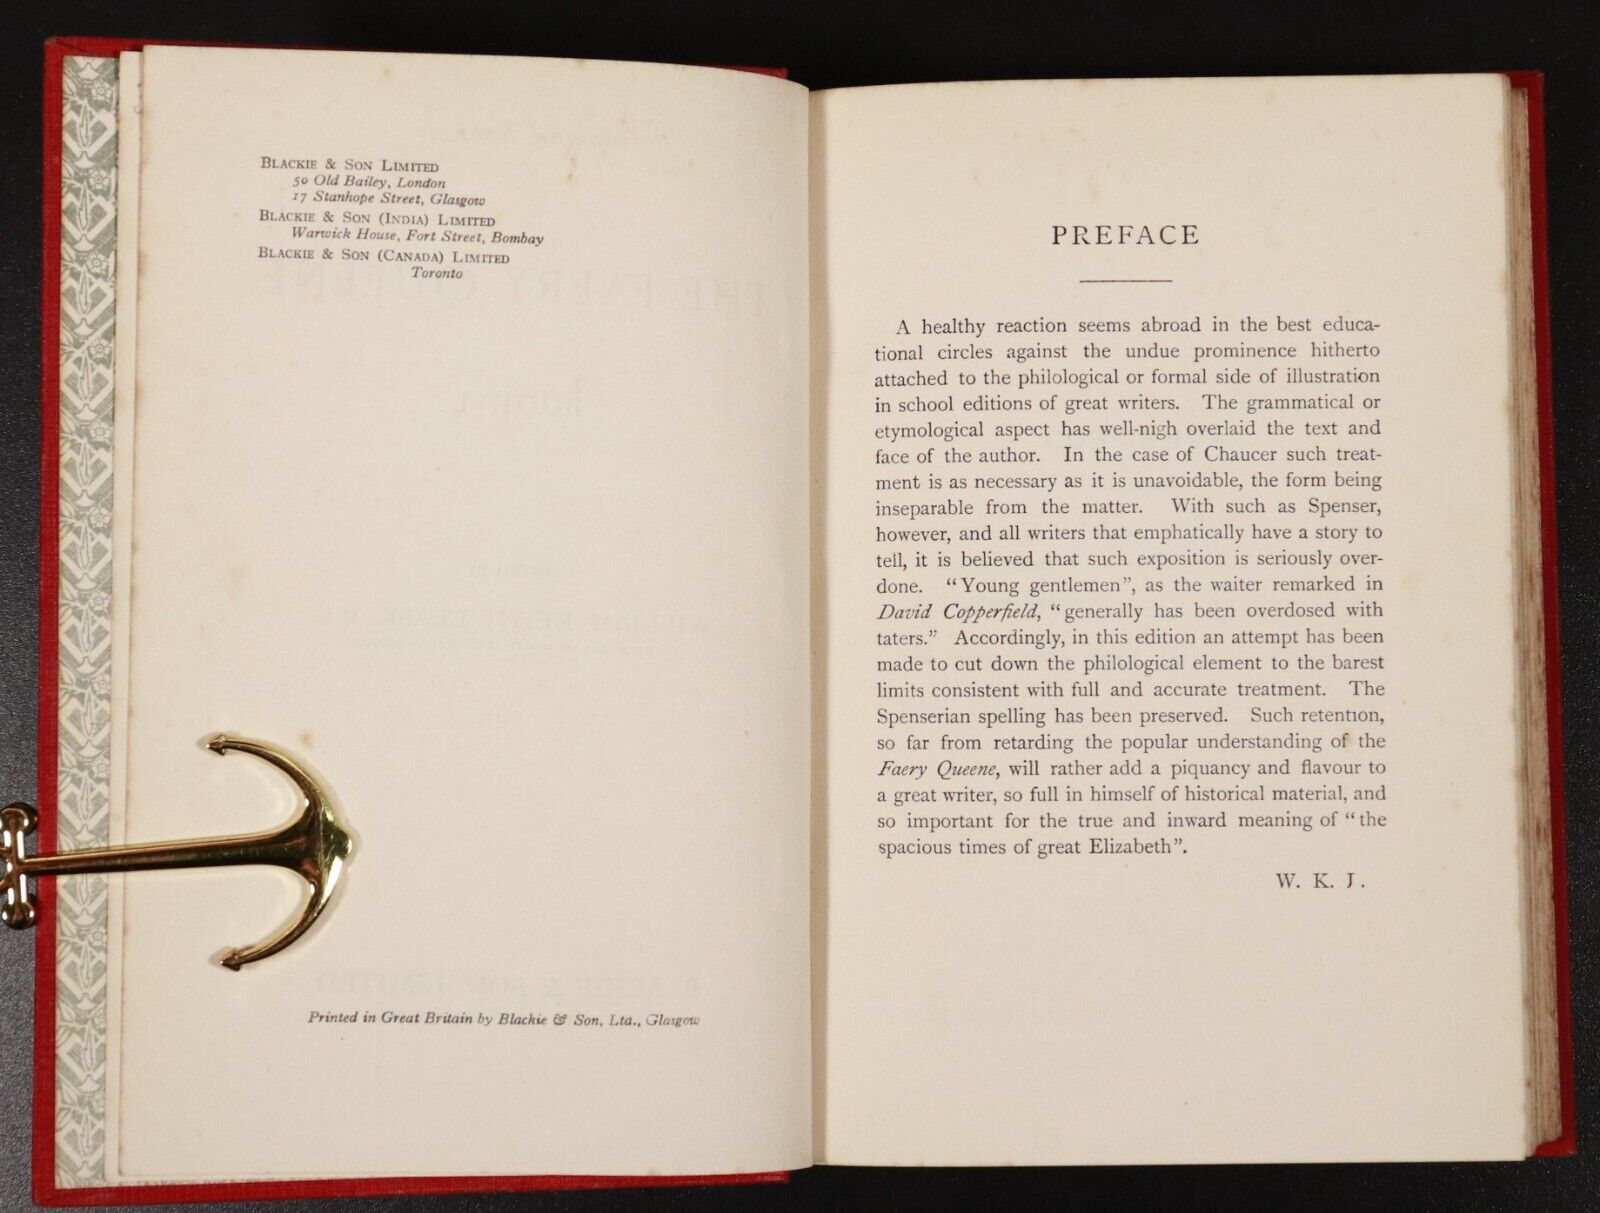 c1920 The Faery Queene by Edmund Spenser Antique British Poetry Book